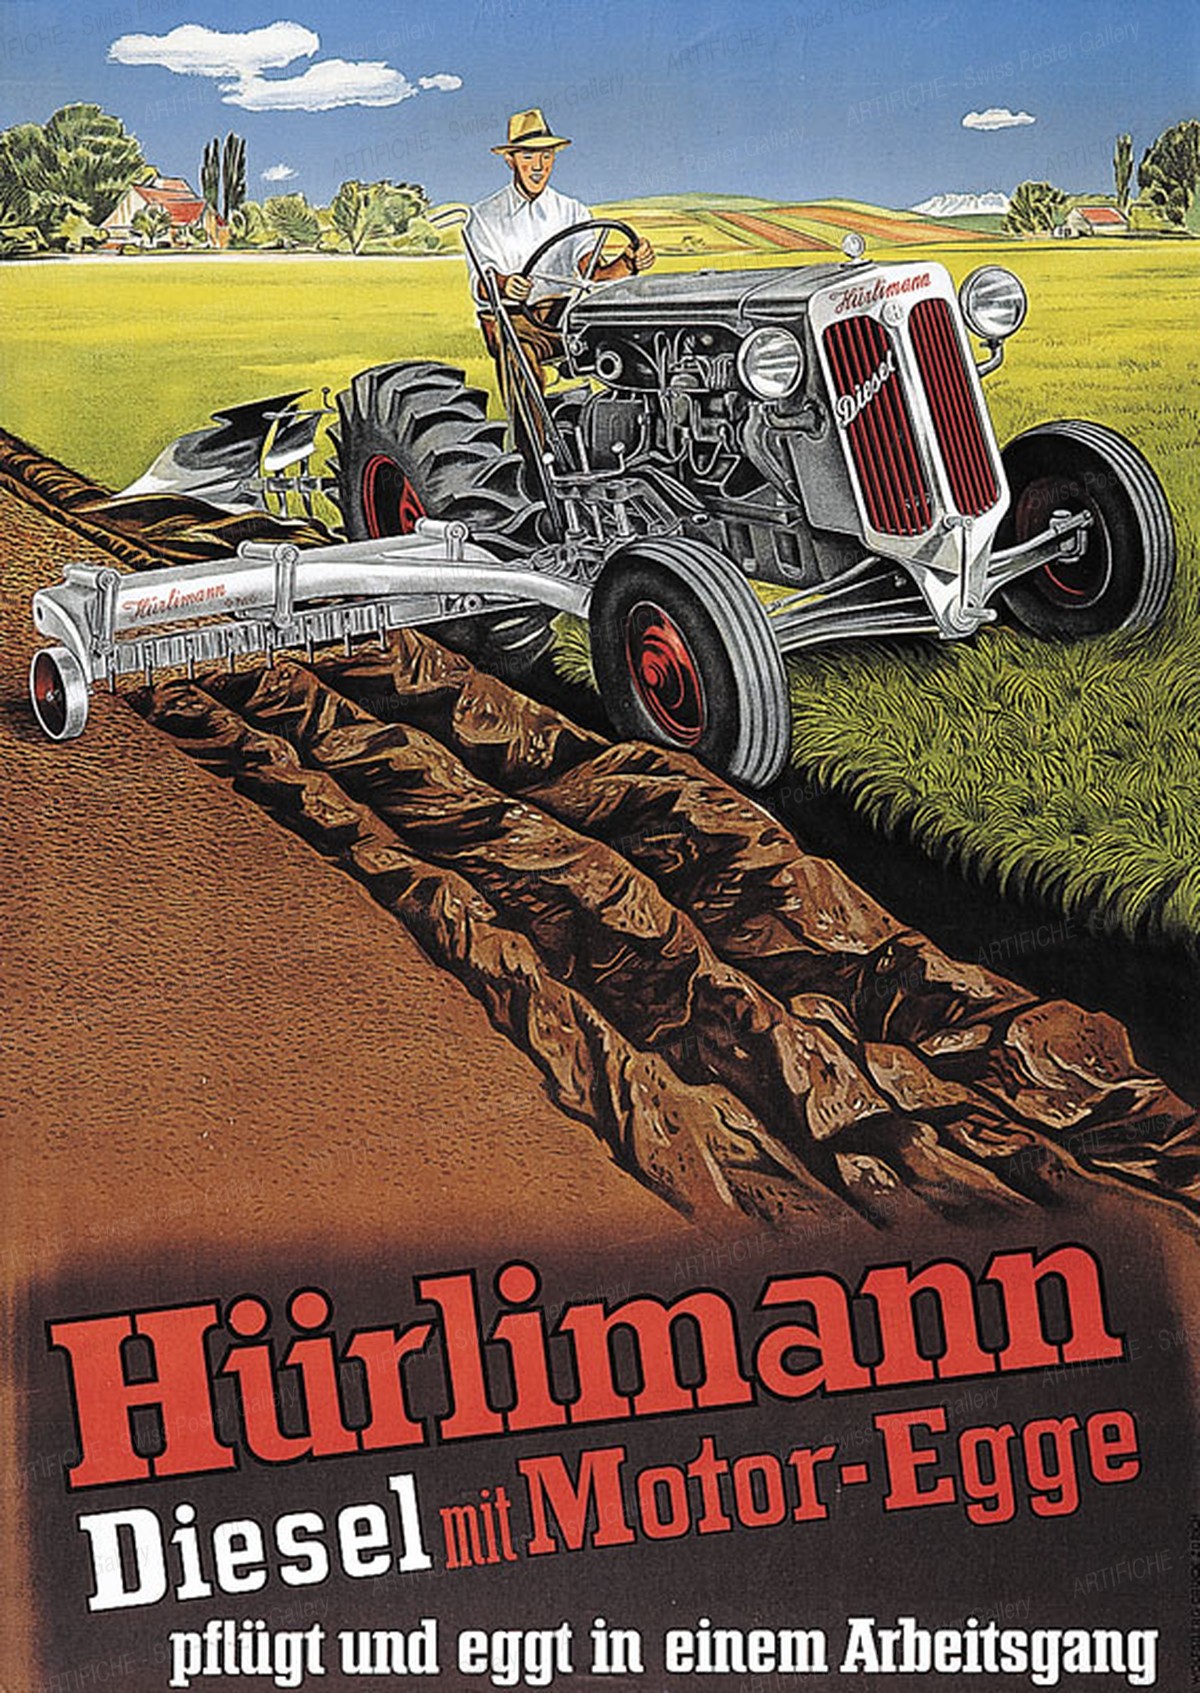 Hürlimann Diesel mit Motor-Egge, Artist unknown